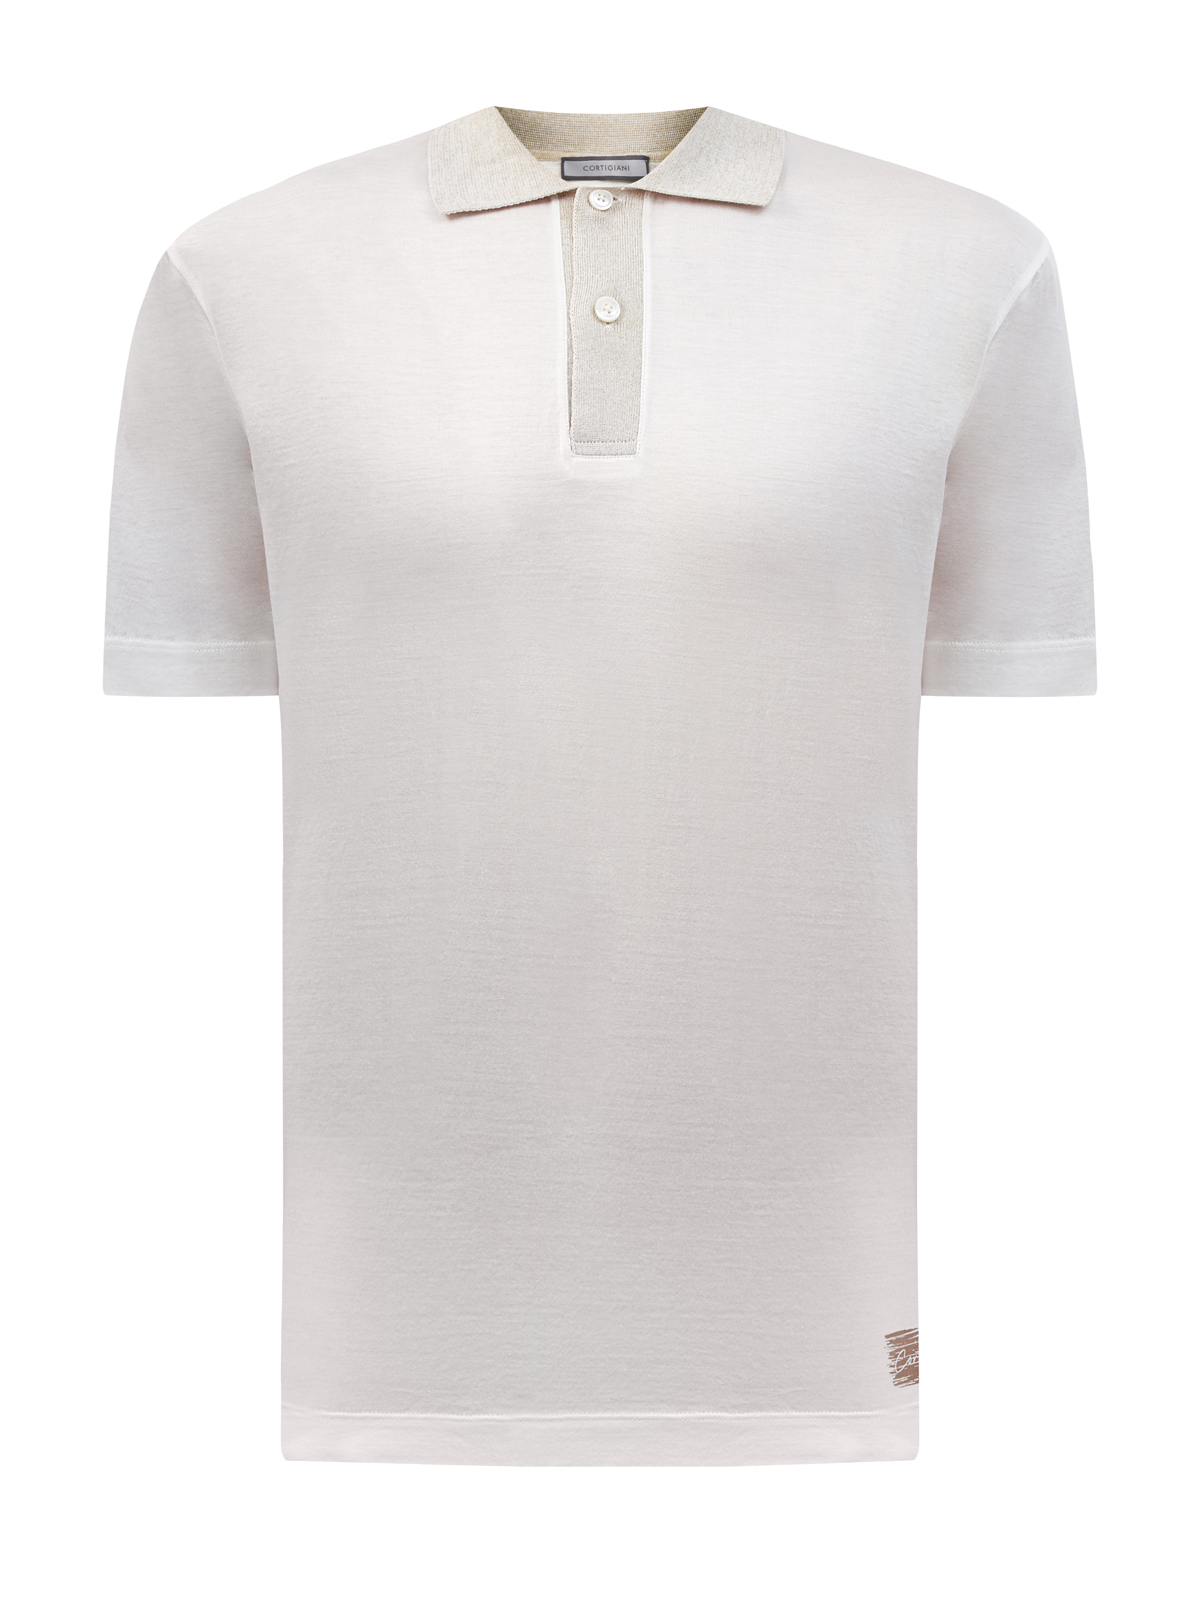 Хлопковая футболка-поло с минималистичным принтом CORTIGIANI белого цвета